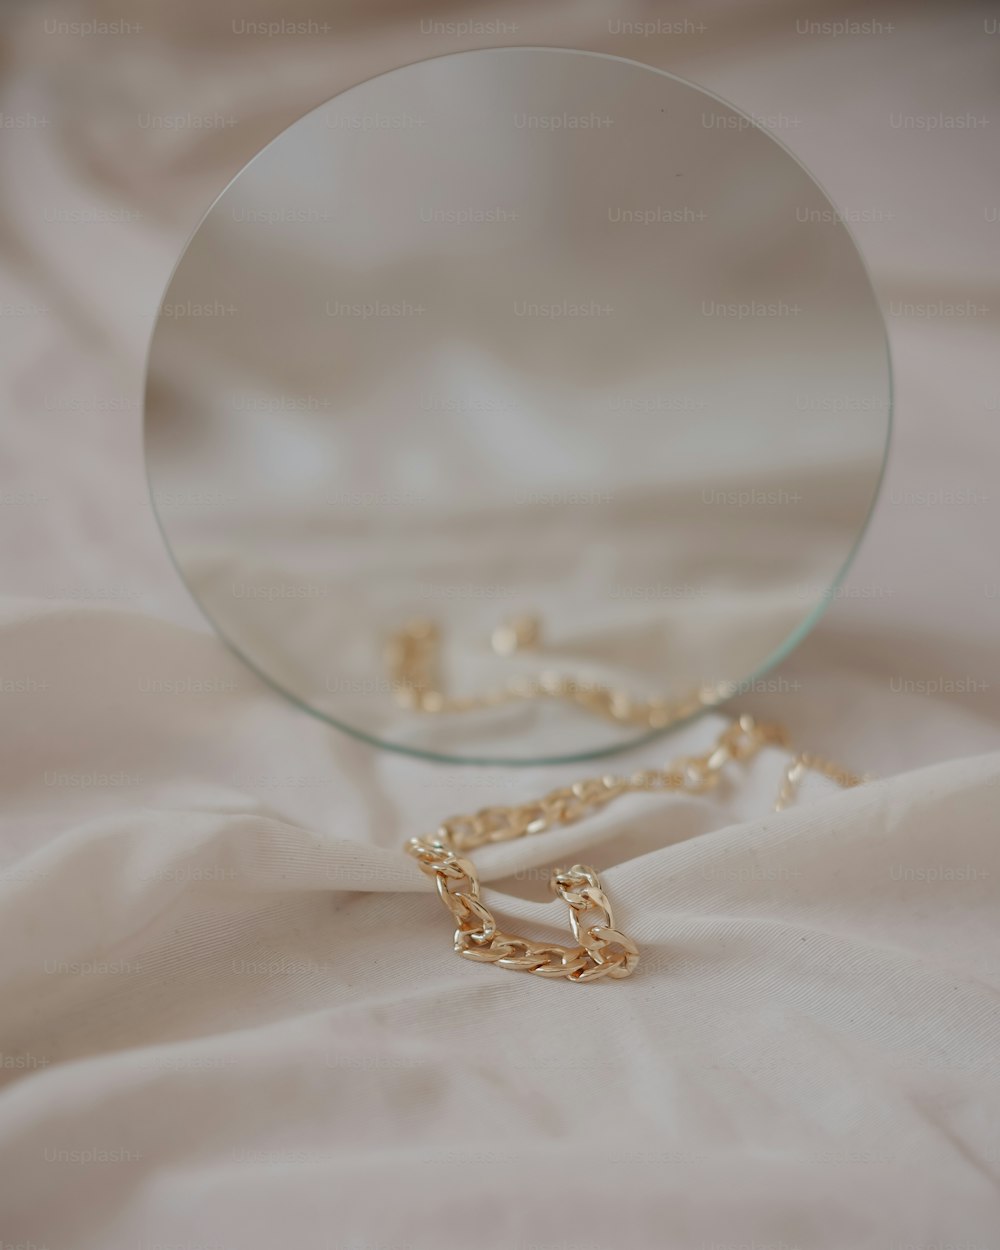 uno specchio e una catena posati su un letto